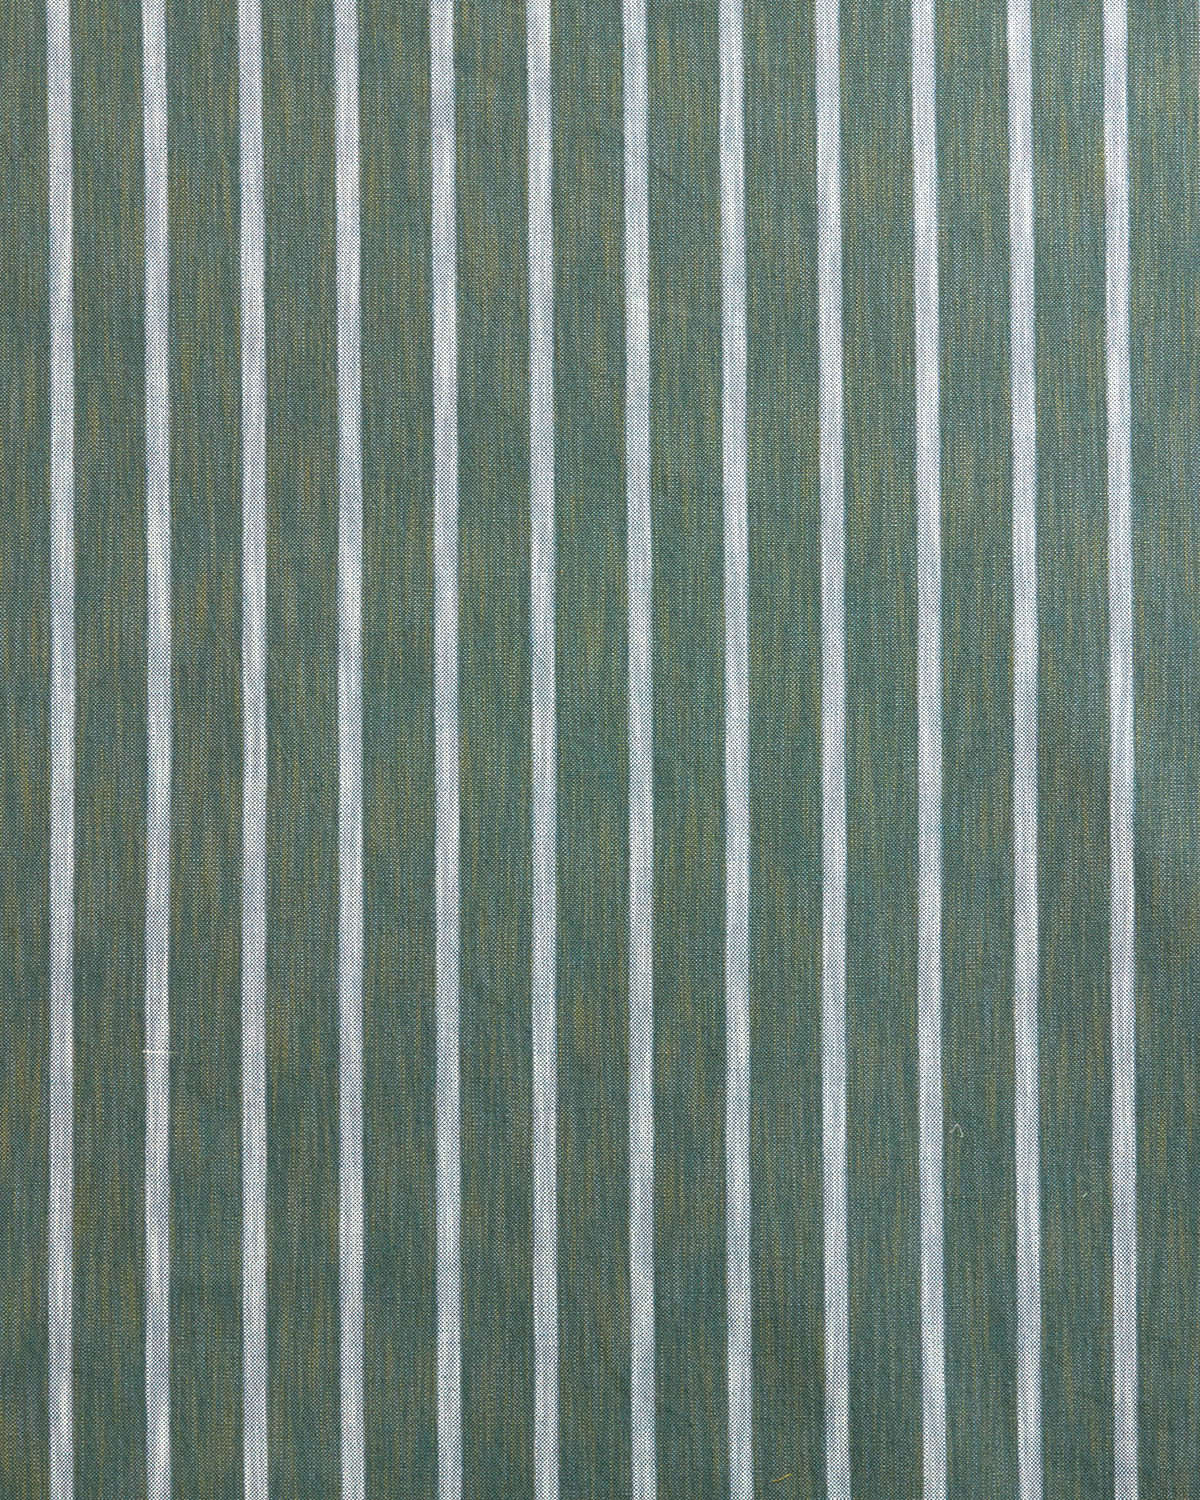 Market Stripe Fabric in Green